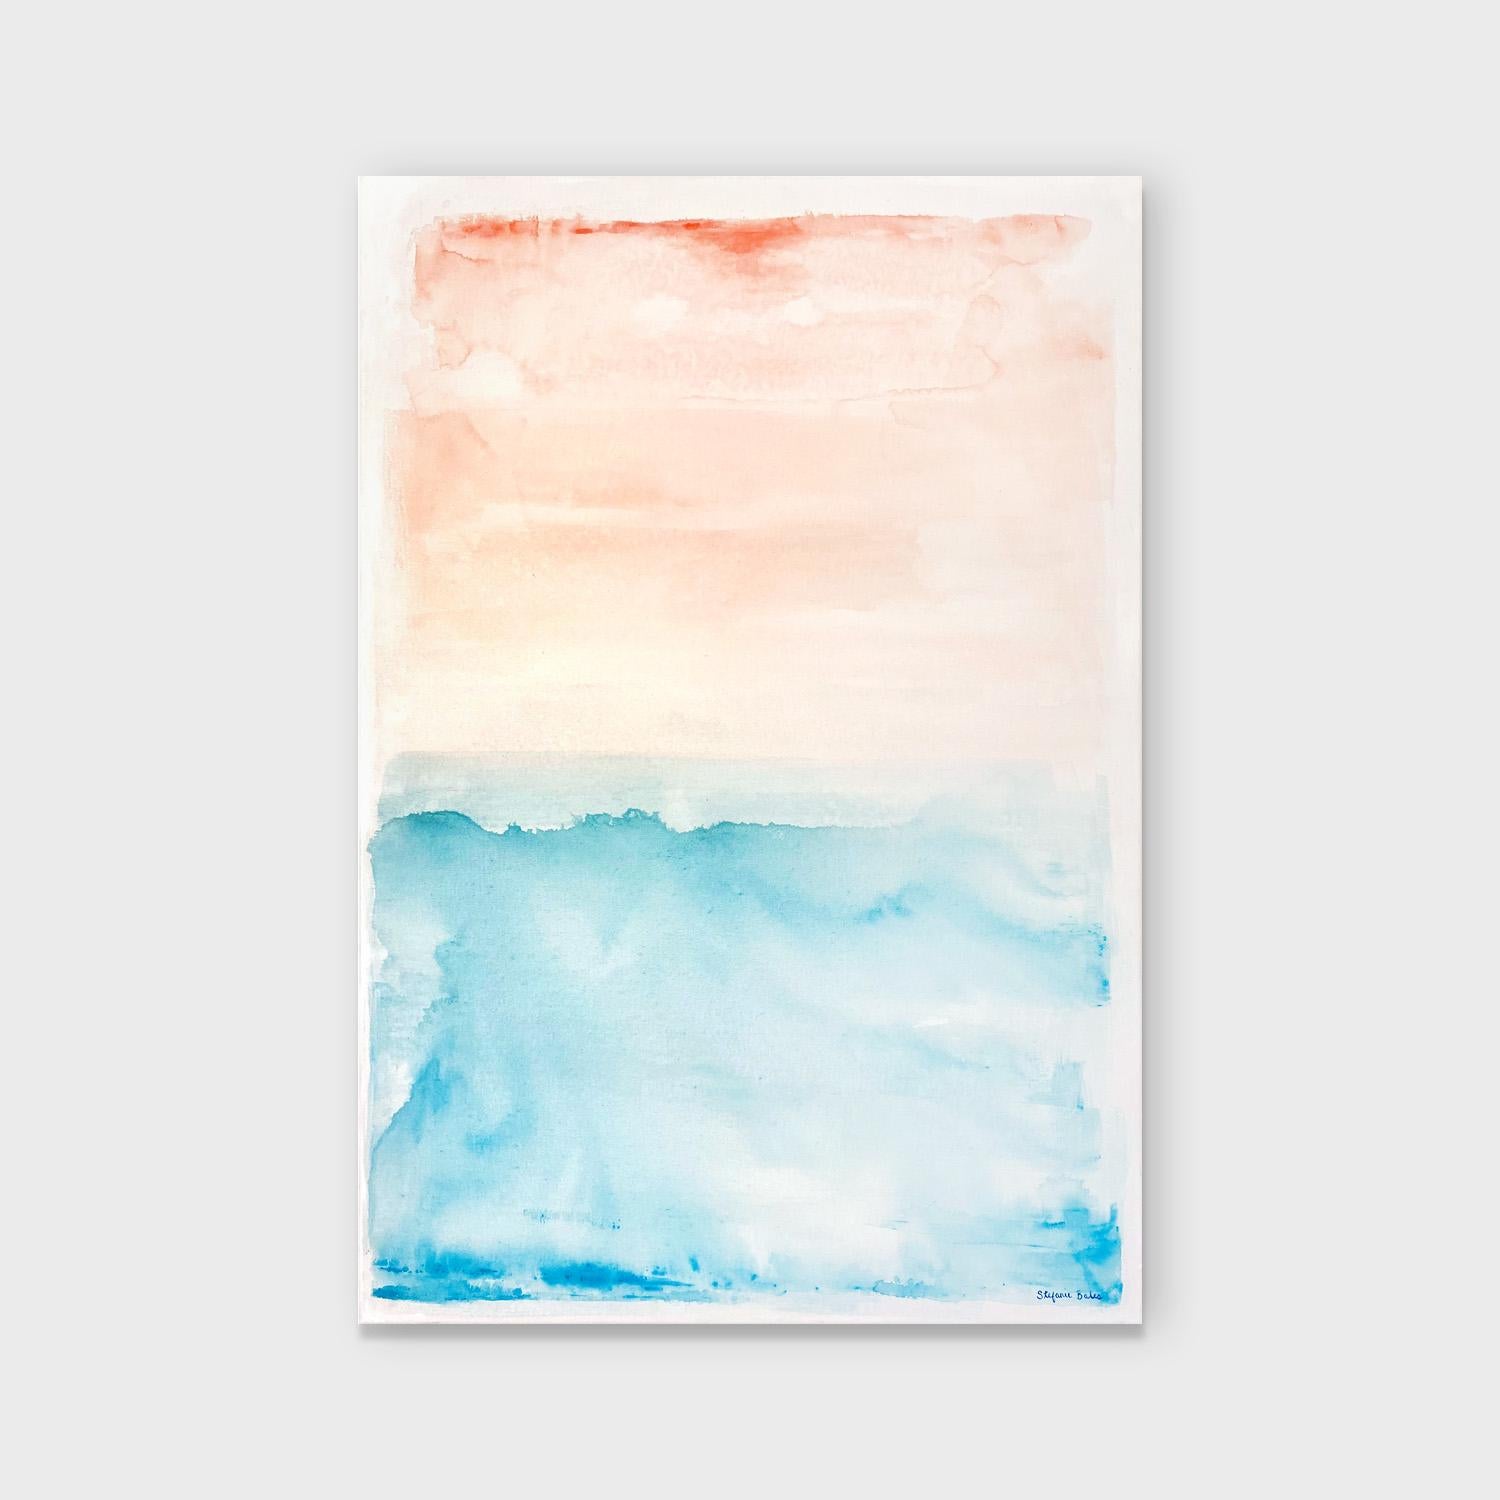 An Abstract Acrylic on Canvas Seascape, 